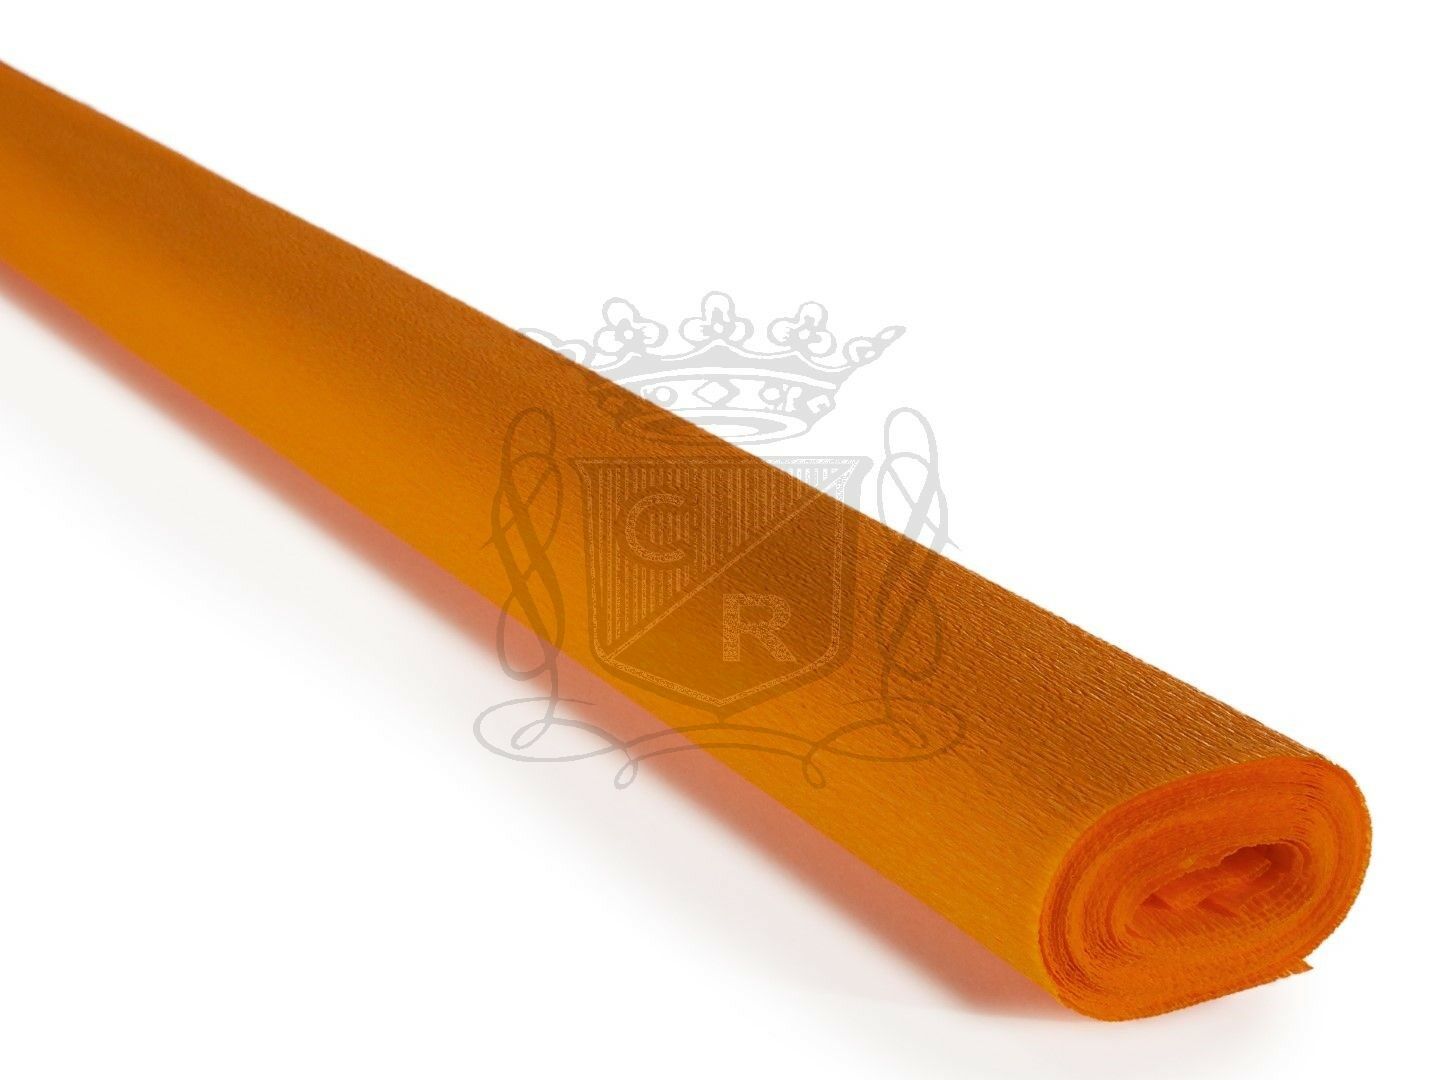 İtalyan Krapon Kağıdı No:299 - Intense Orange 60 gr. 50*250 cm